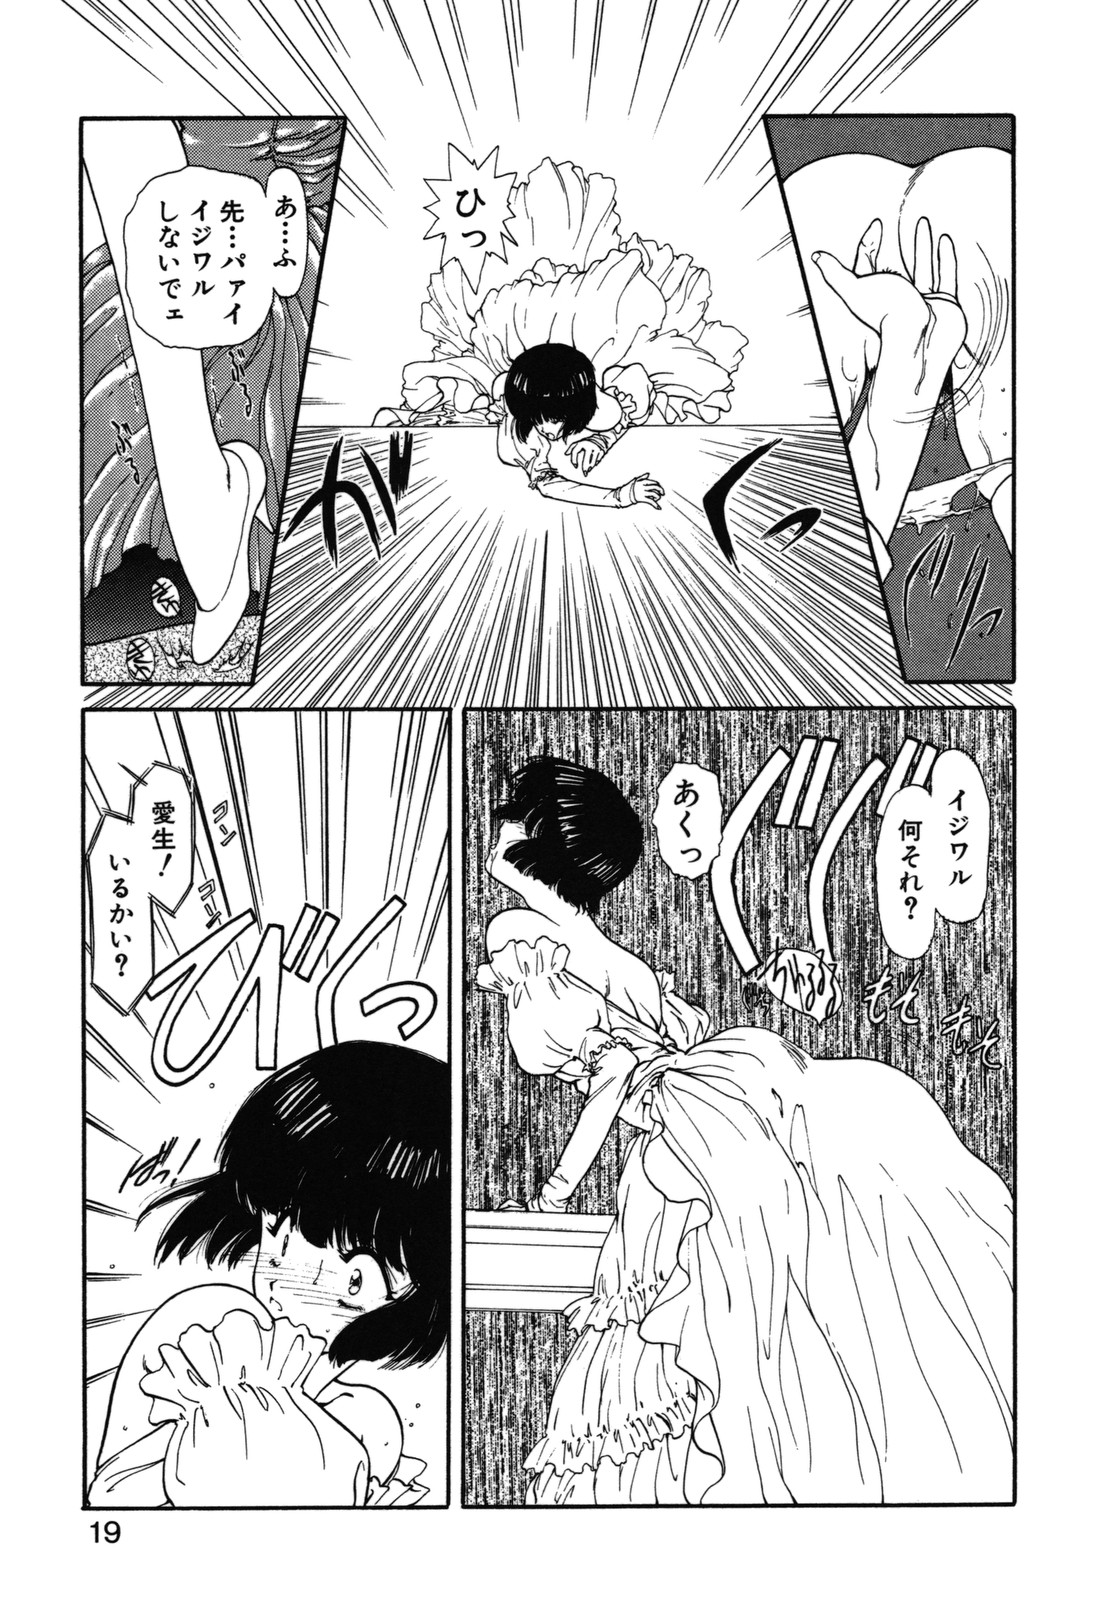 [Utatane Hiroyuki] COUNT DOWN page 20 full